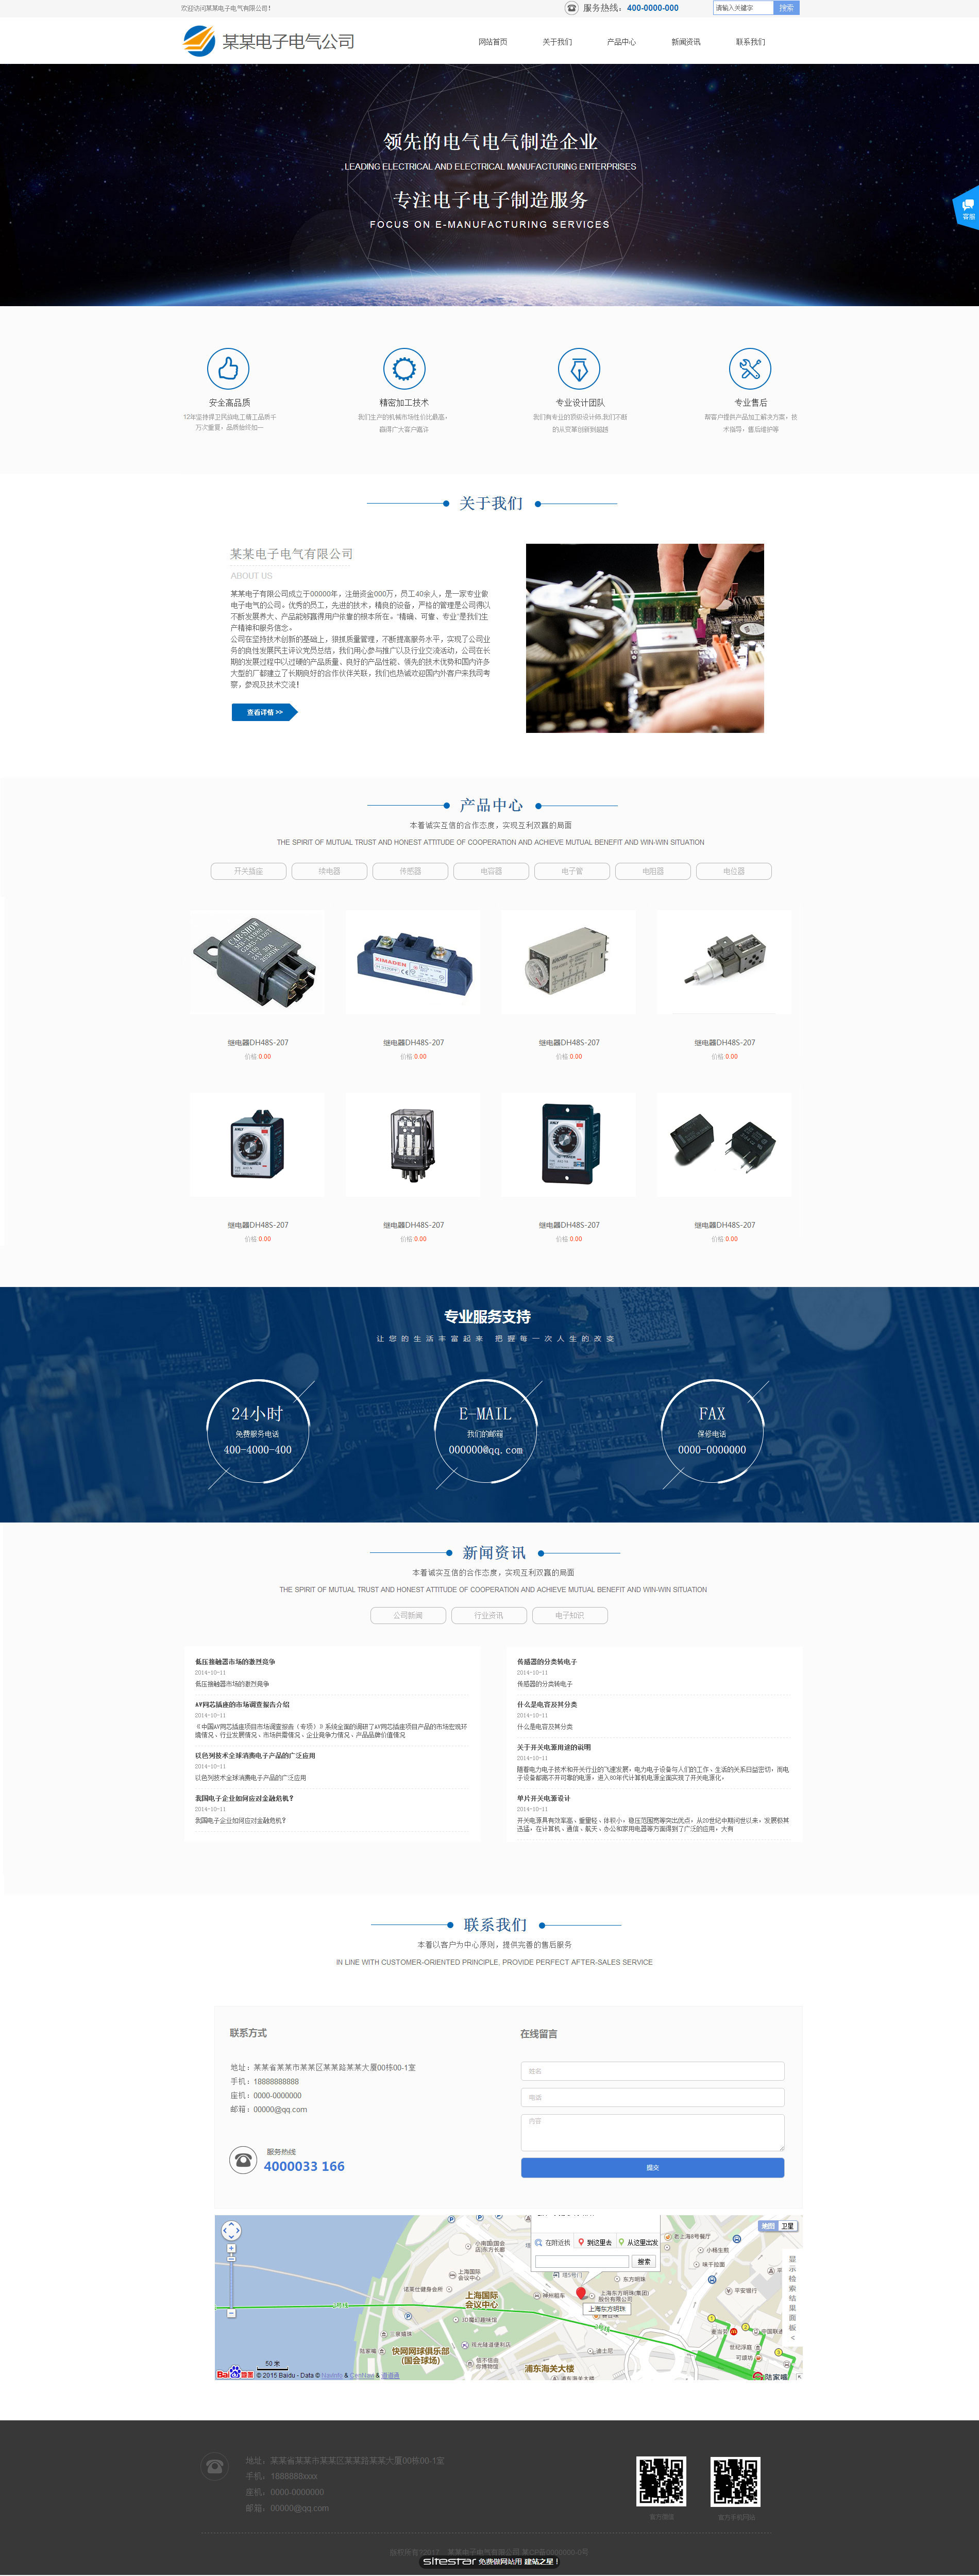 企业网站精美模板-electronics-1112251